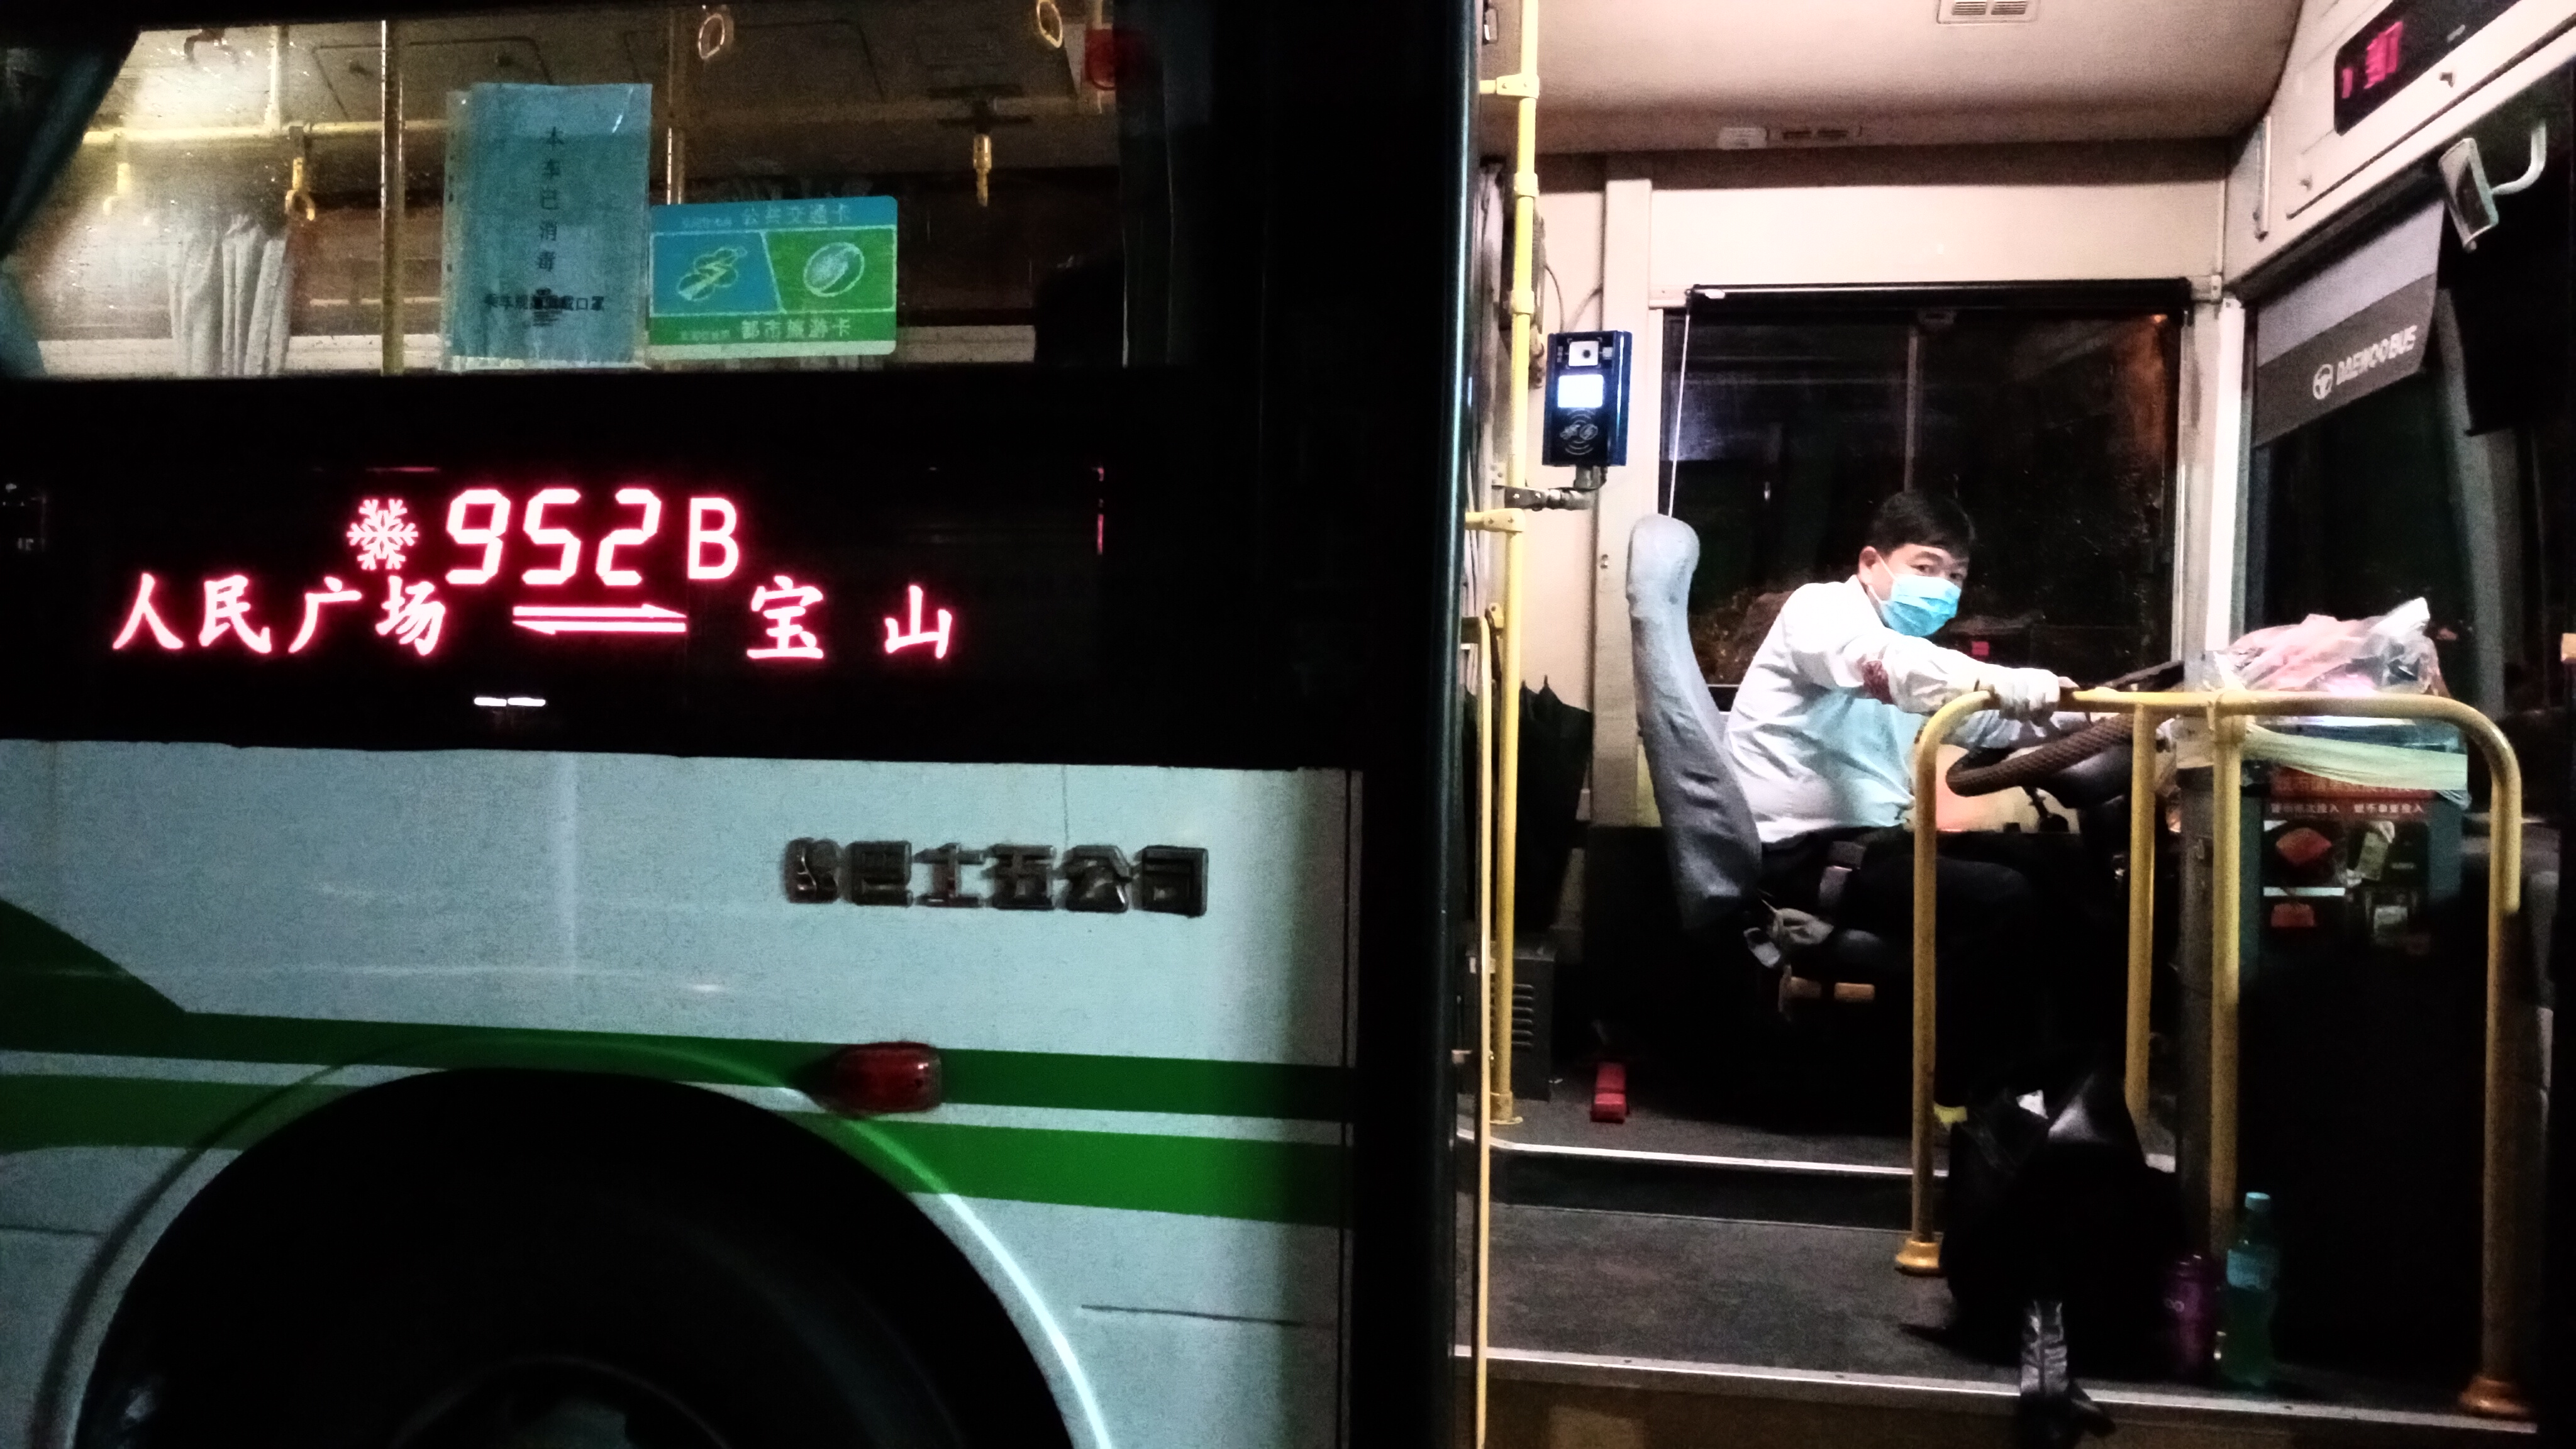 上海公交952路B線